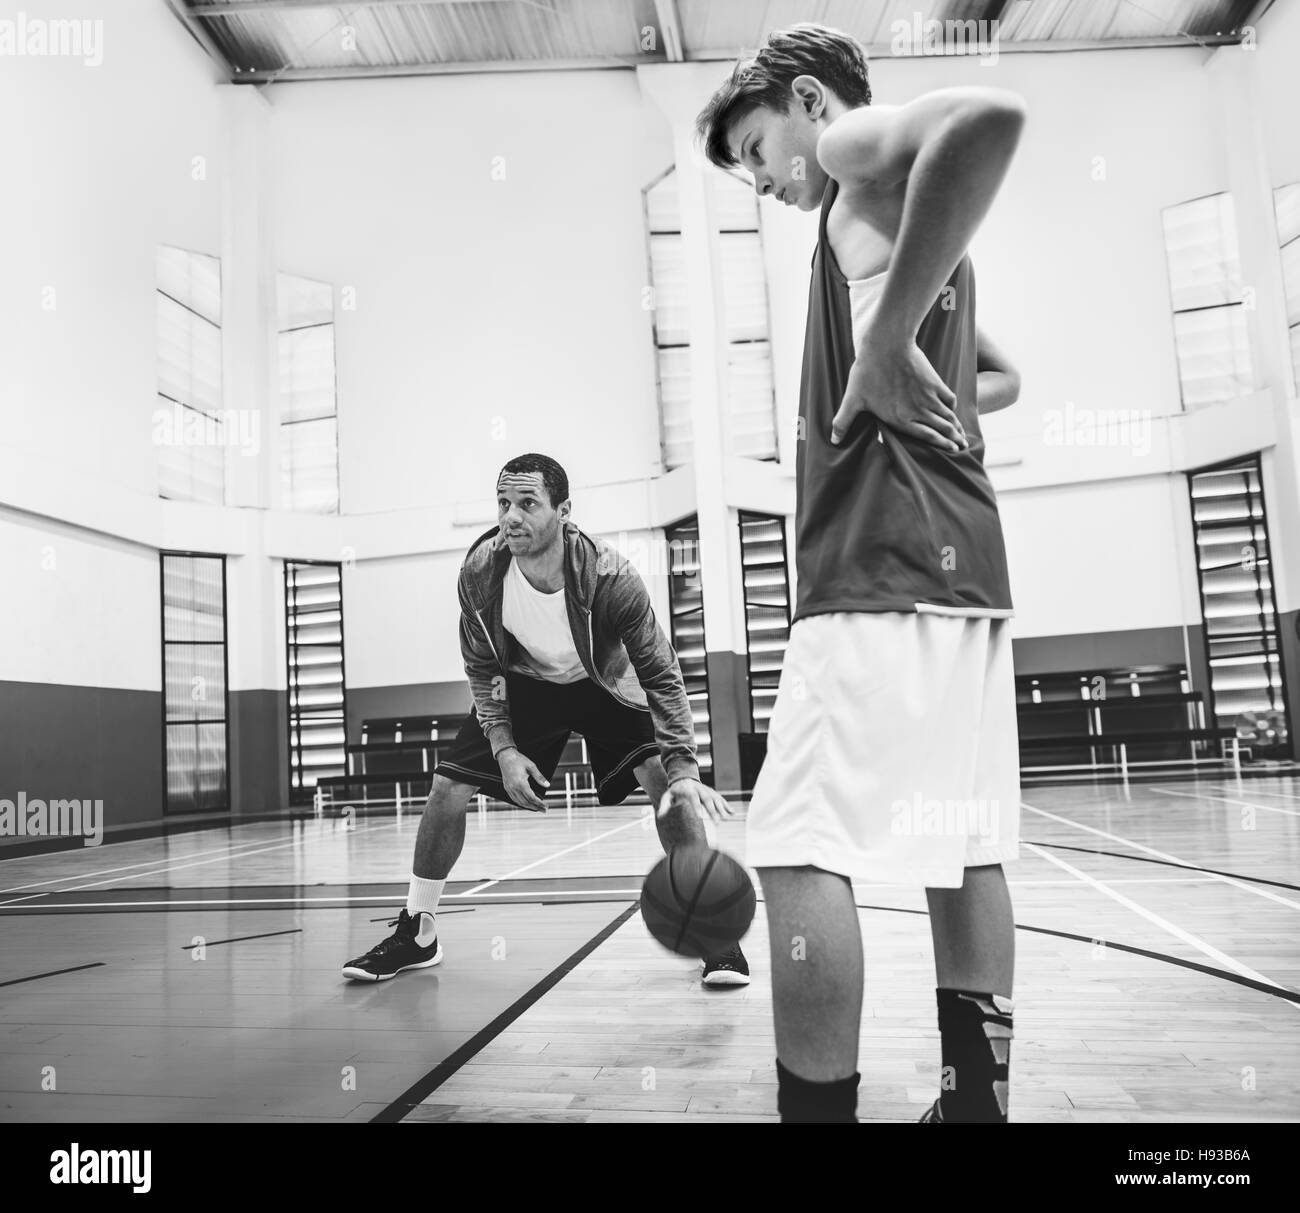 Basketball coach Banque d'images noir et blanc - Alamy